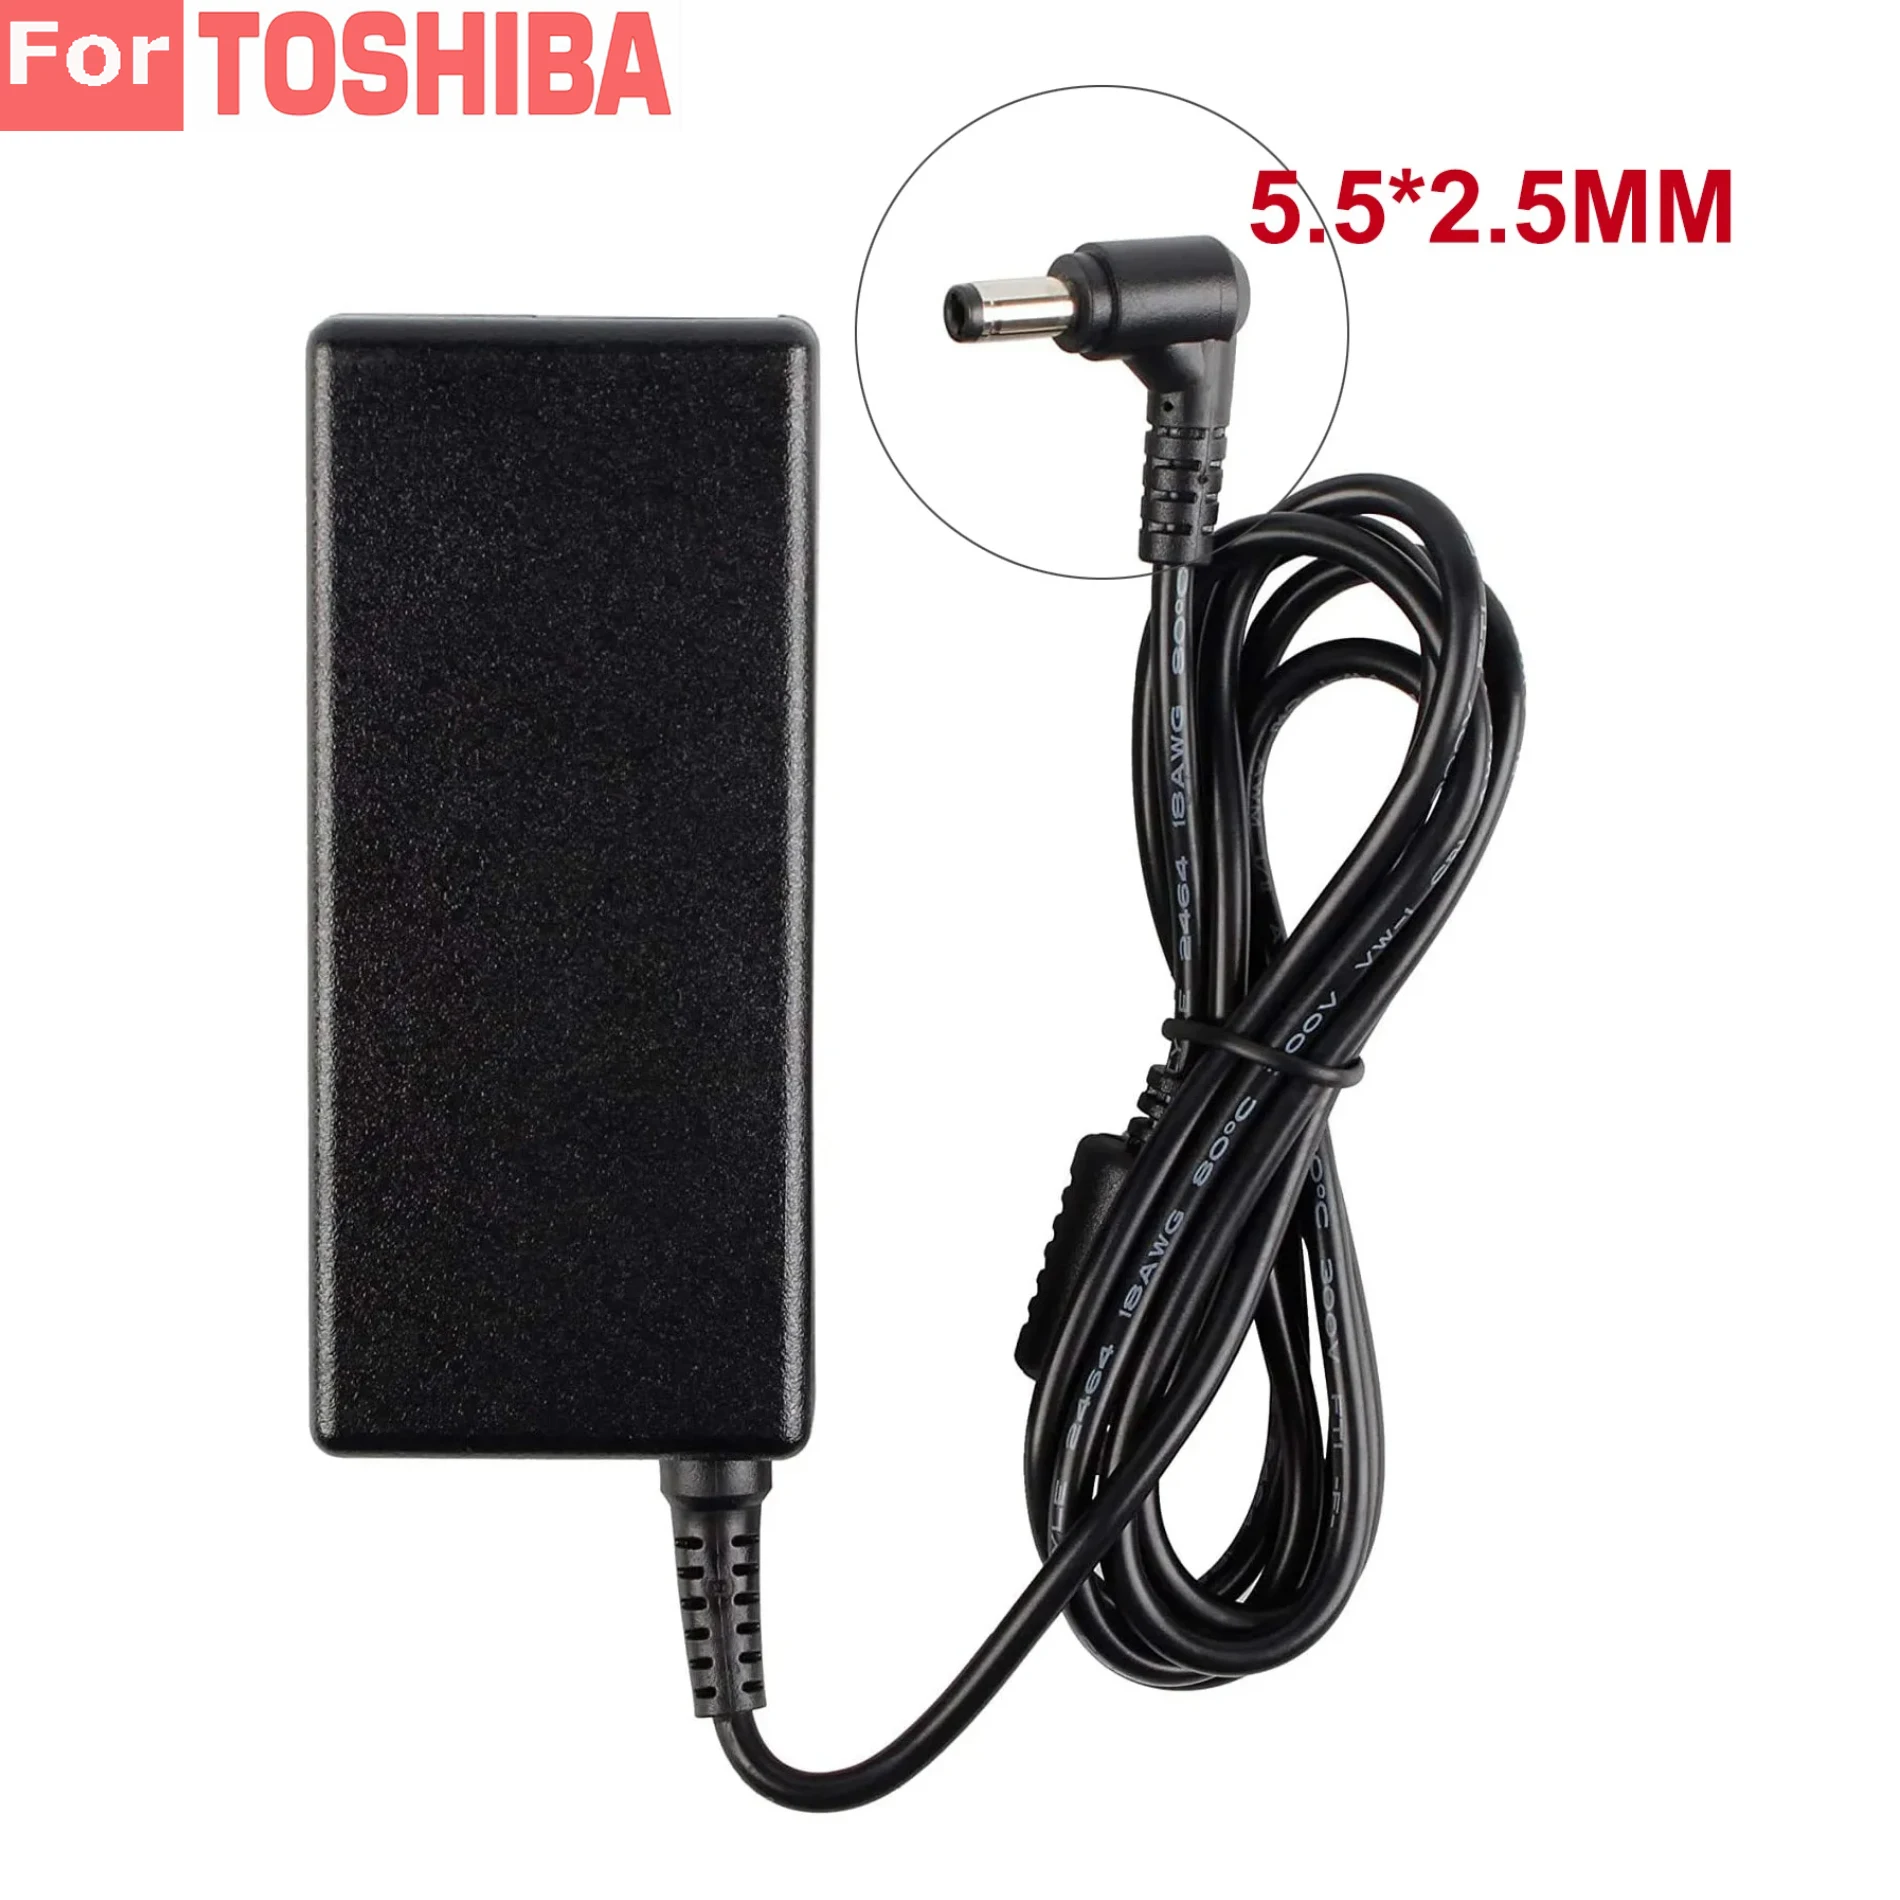 

Новый адаптер переменного тока 65 Вт 19 в А, зарядное устройство, источник питания для ноутбука Toshiba N193 V85 R33030 Satellite C650 C660 C50 C55 L50 C665D